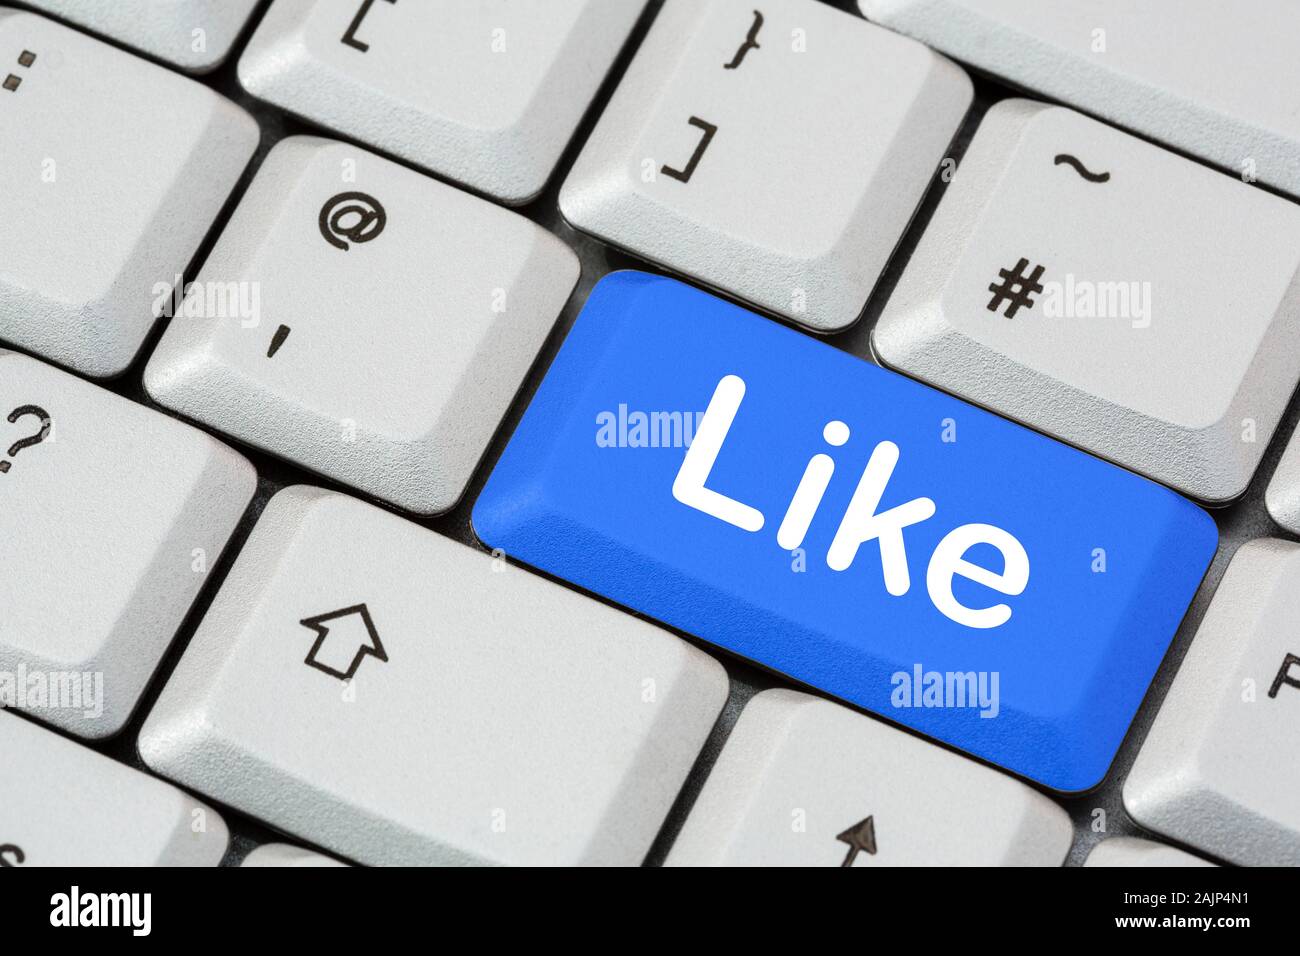 Una tastiera con la parola scritta in bianco su un tasto blu invio.  Concetto di social media e networking di Facebook. Inghilterra, Regno  Unito, Gran Bretagna Foto stock - Alamy